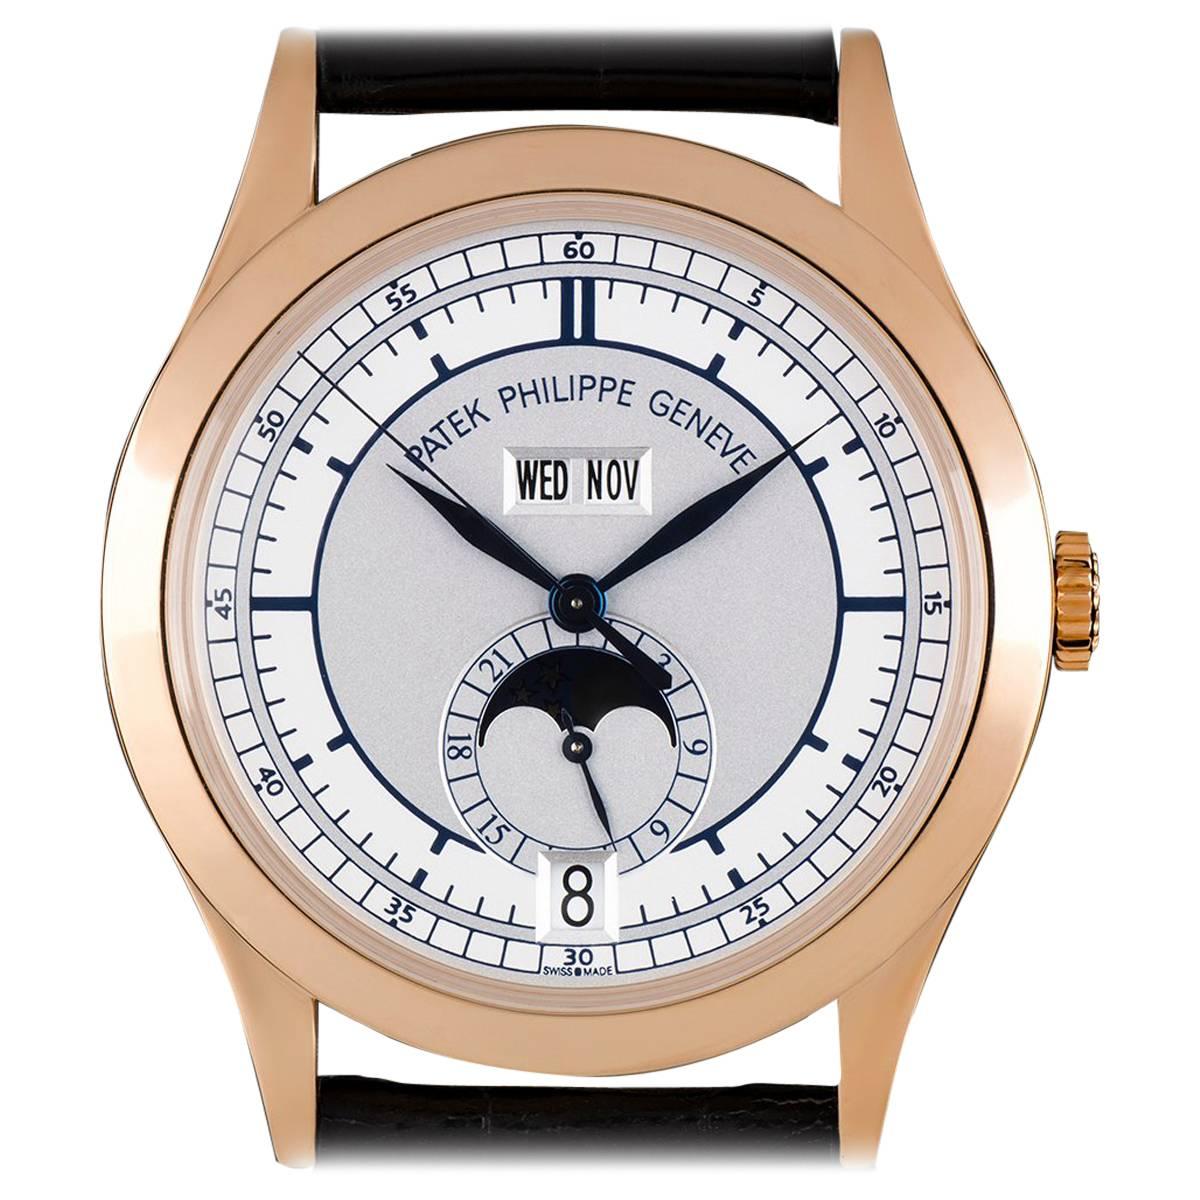 Patek Philippe Rose Gold Annual Calendar Automatic Wristwatch Ref 5396R-001